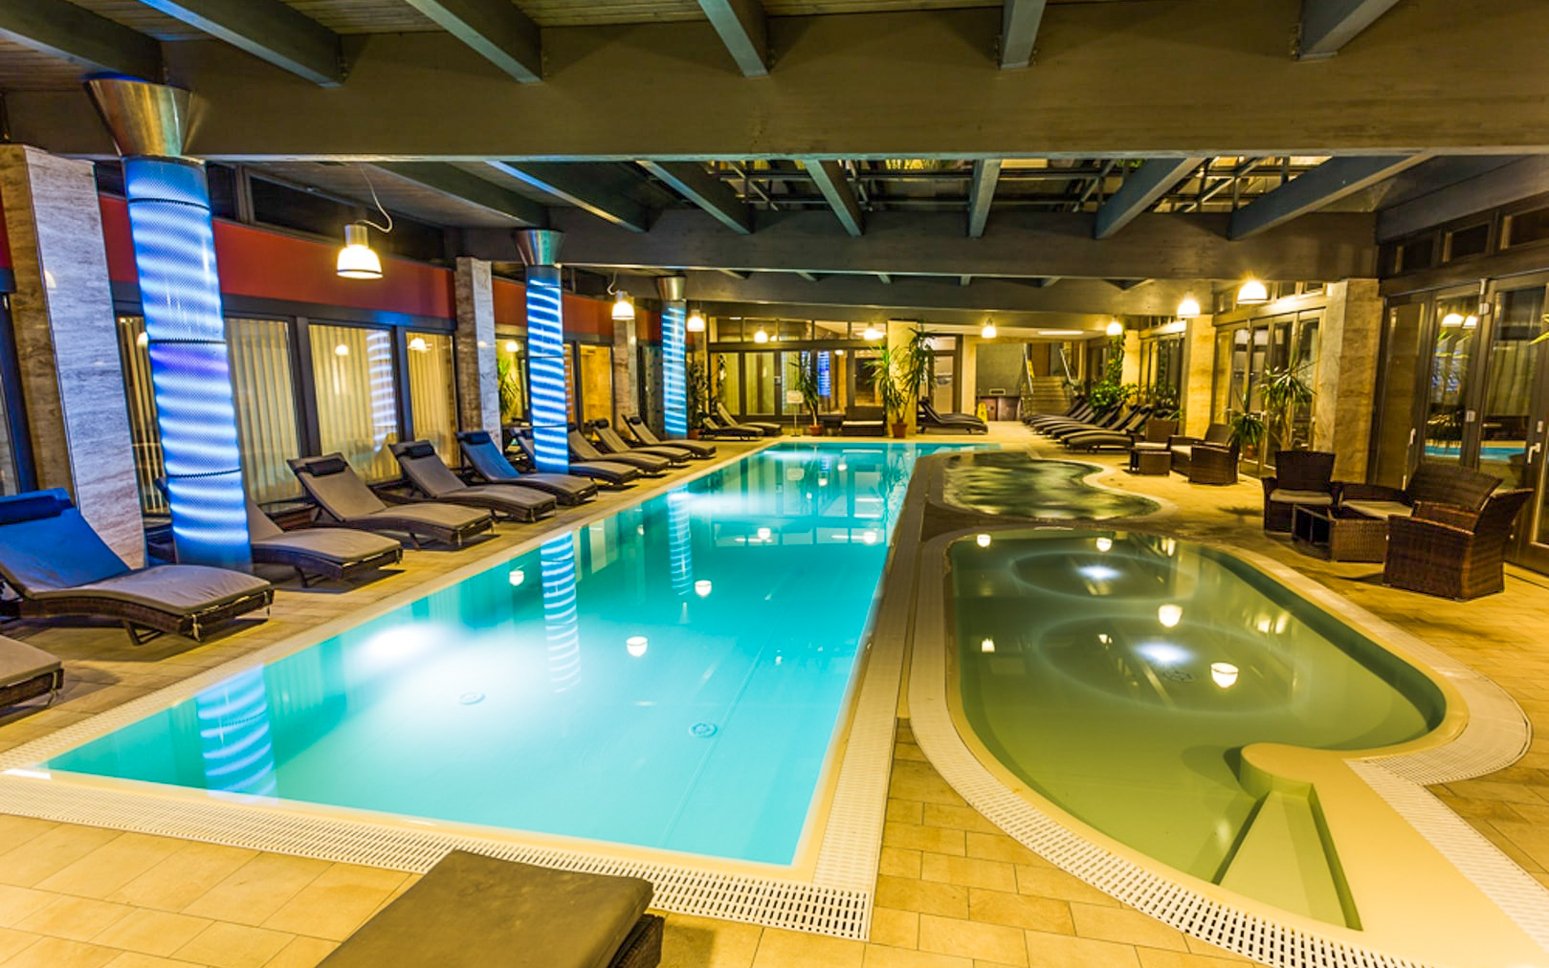 Kráľovský pobyt v Hoteli Visegrád **** s polpenziou, vínom, neobmedzenými bazénmi a saunami + rytiersky súboj<br/>Hotel Visegrád ****, Rév u. 15., Visegrád 2025, info@hotelvisegrad.hu